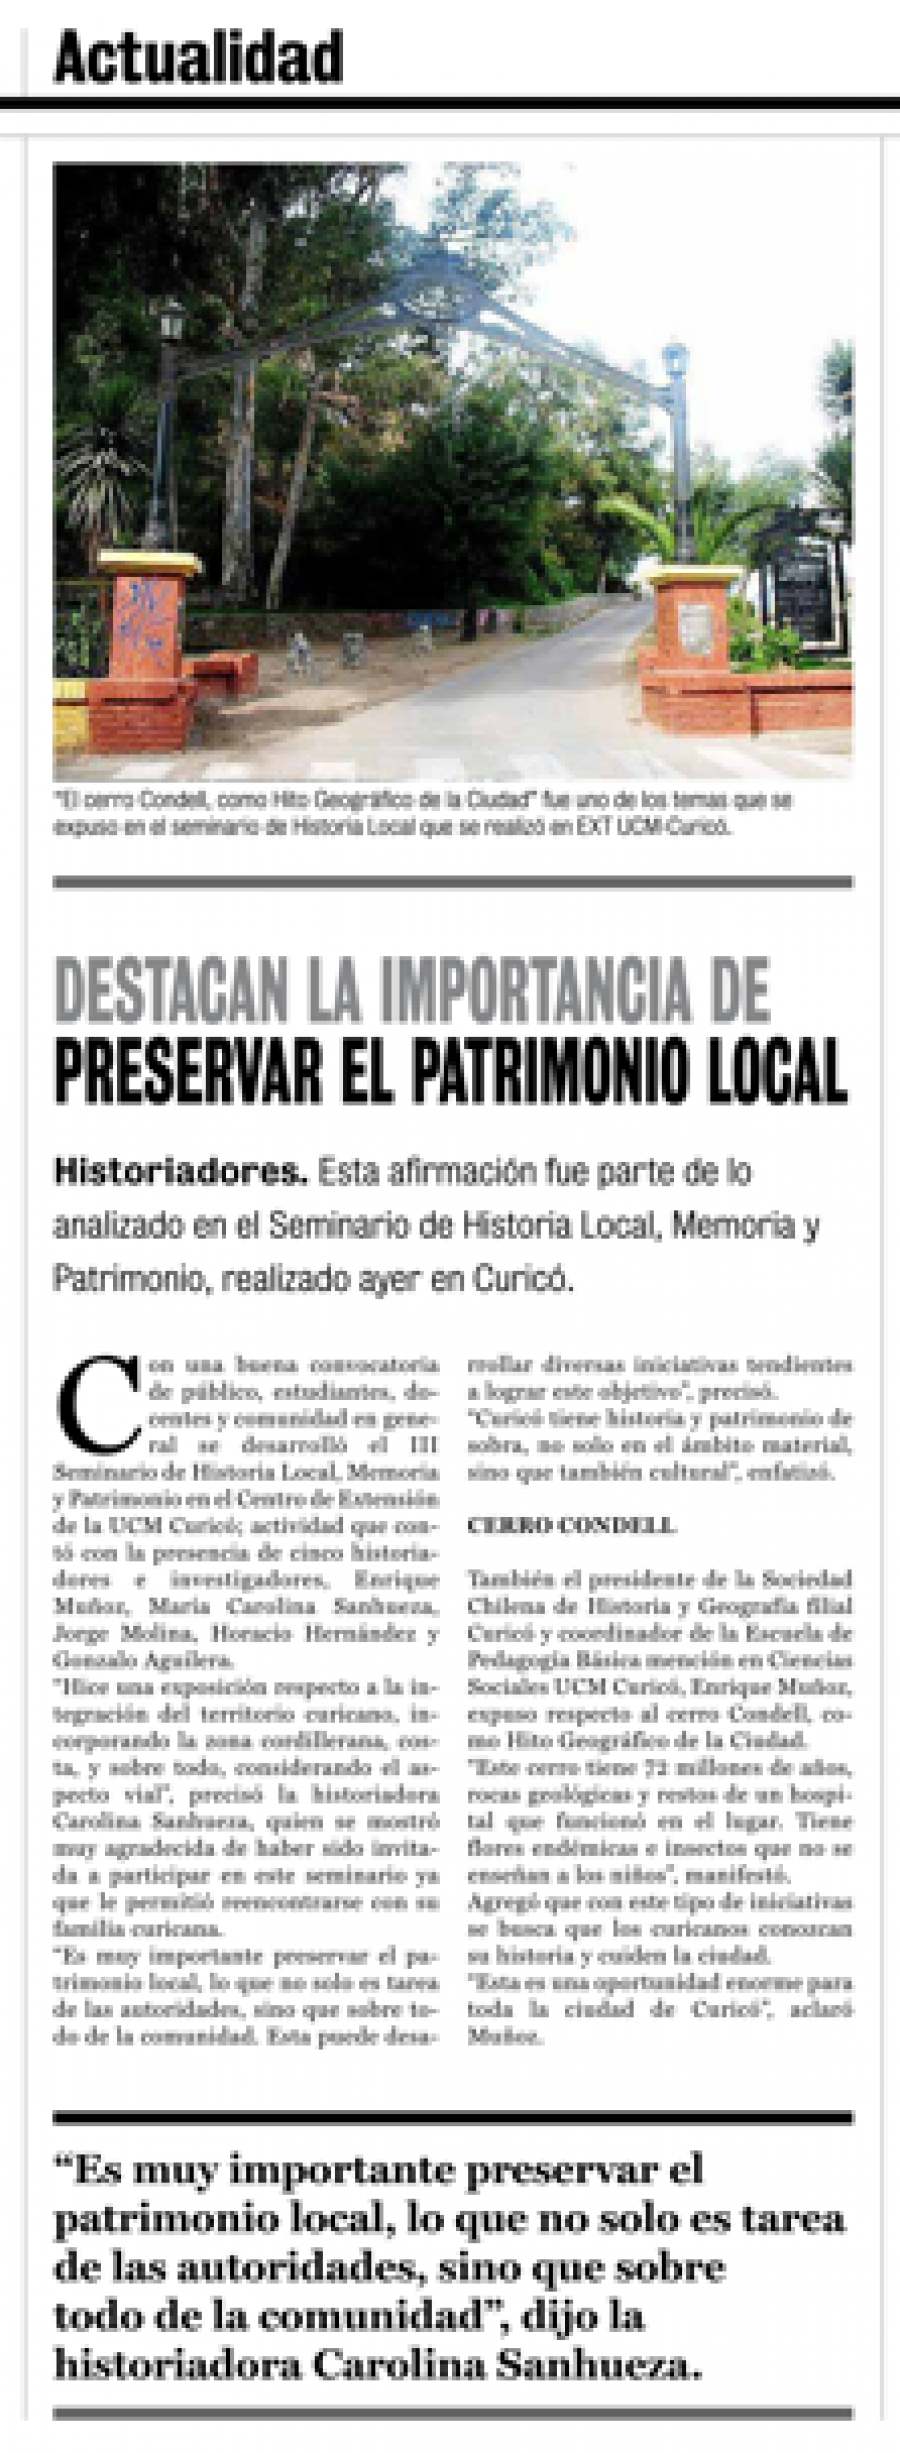 23 de junio en Diario La Prensa: “Destacan la importancia de preservar el patrimonio local”